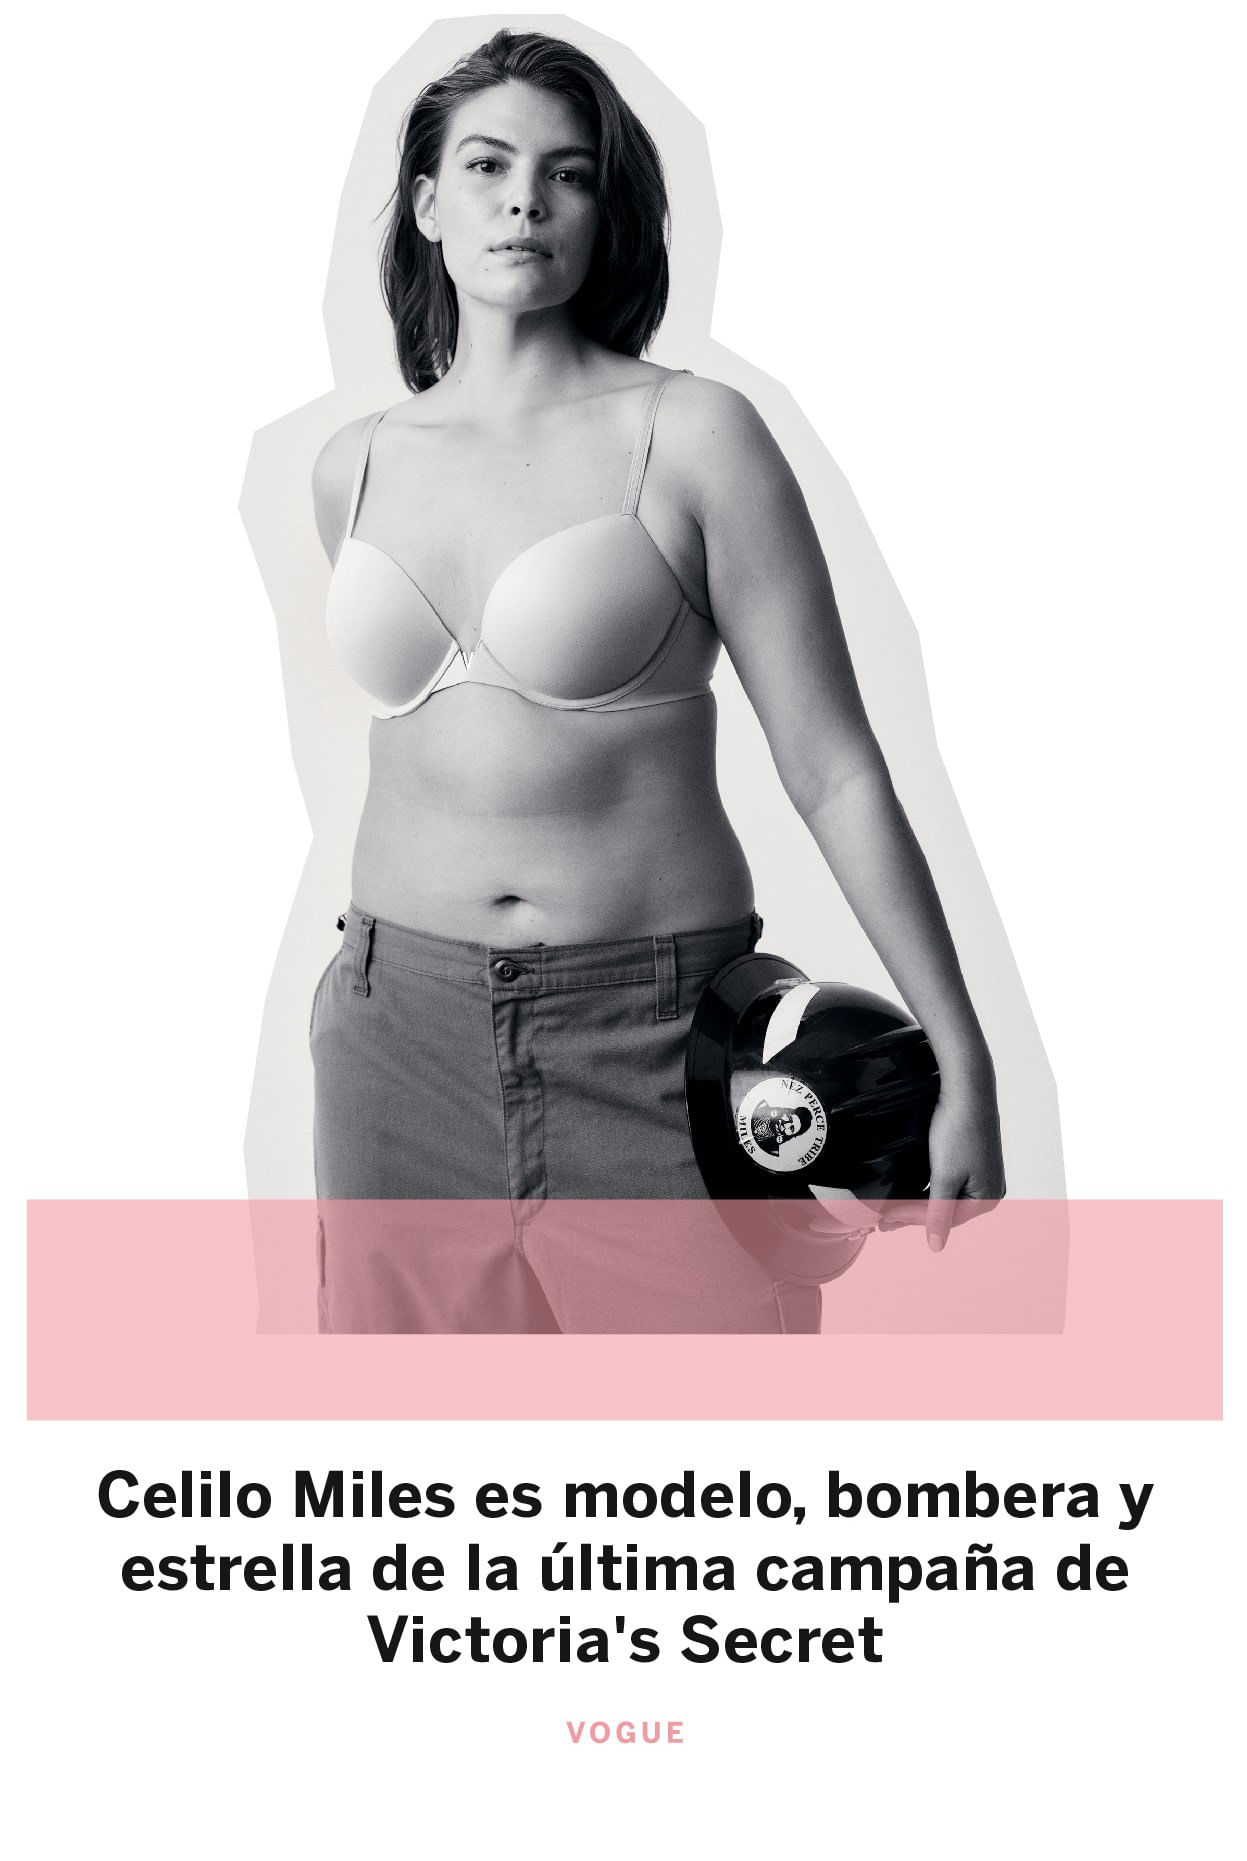 Celilo Miles